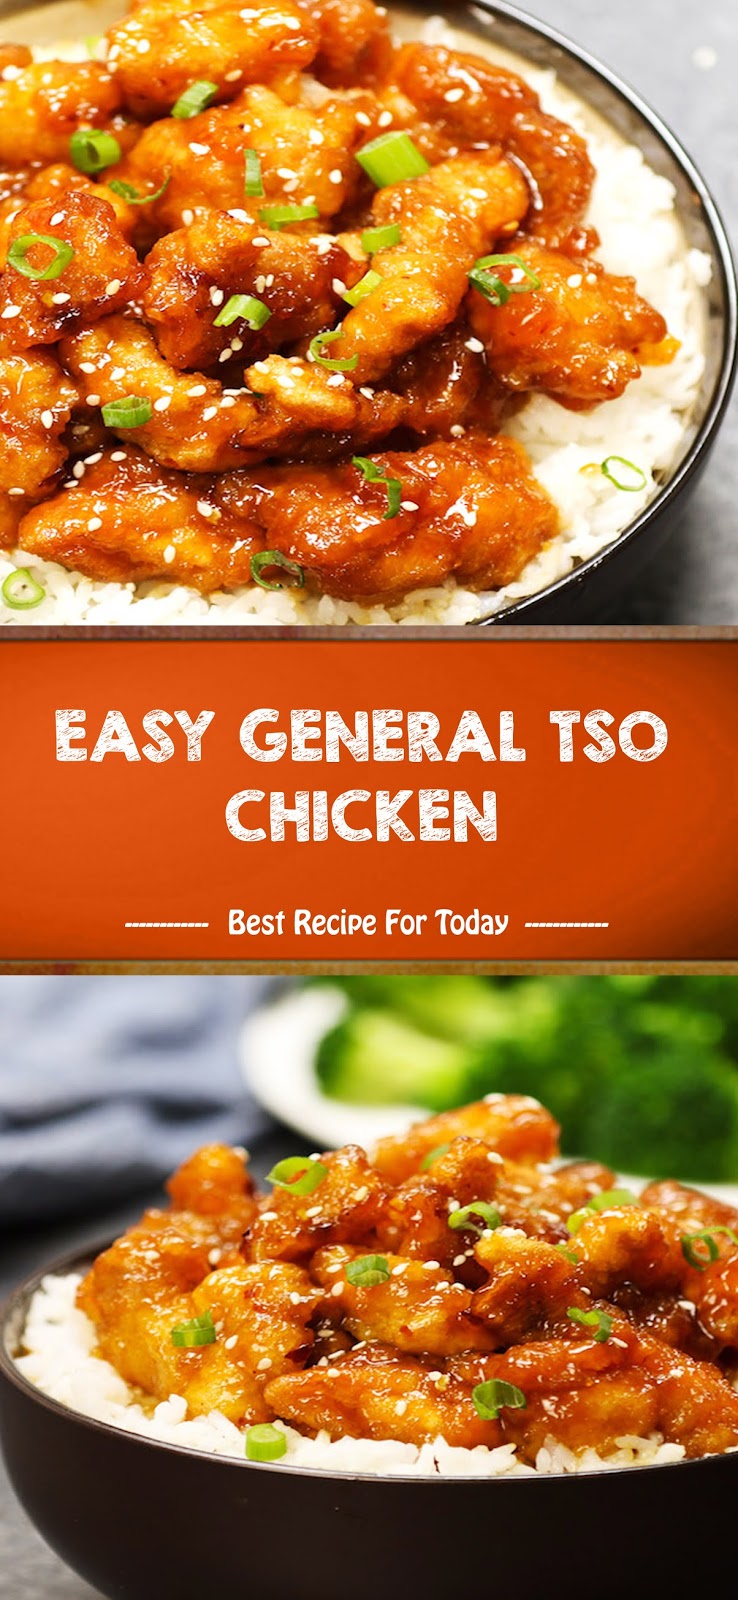 Easy General Tso Chicken